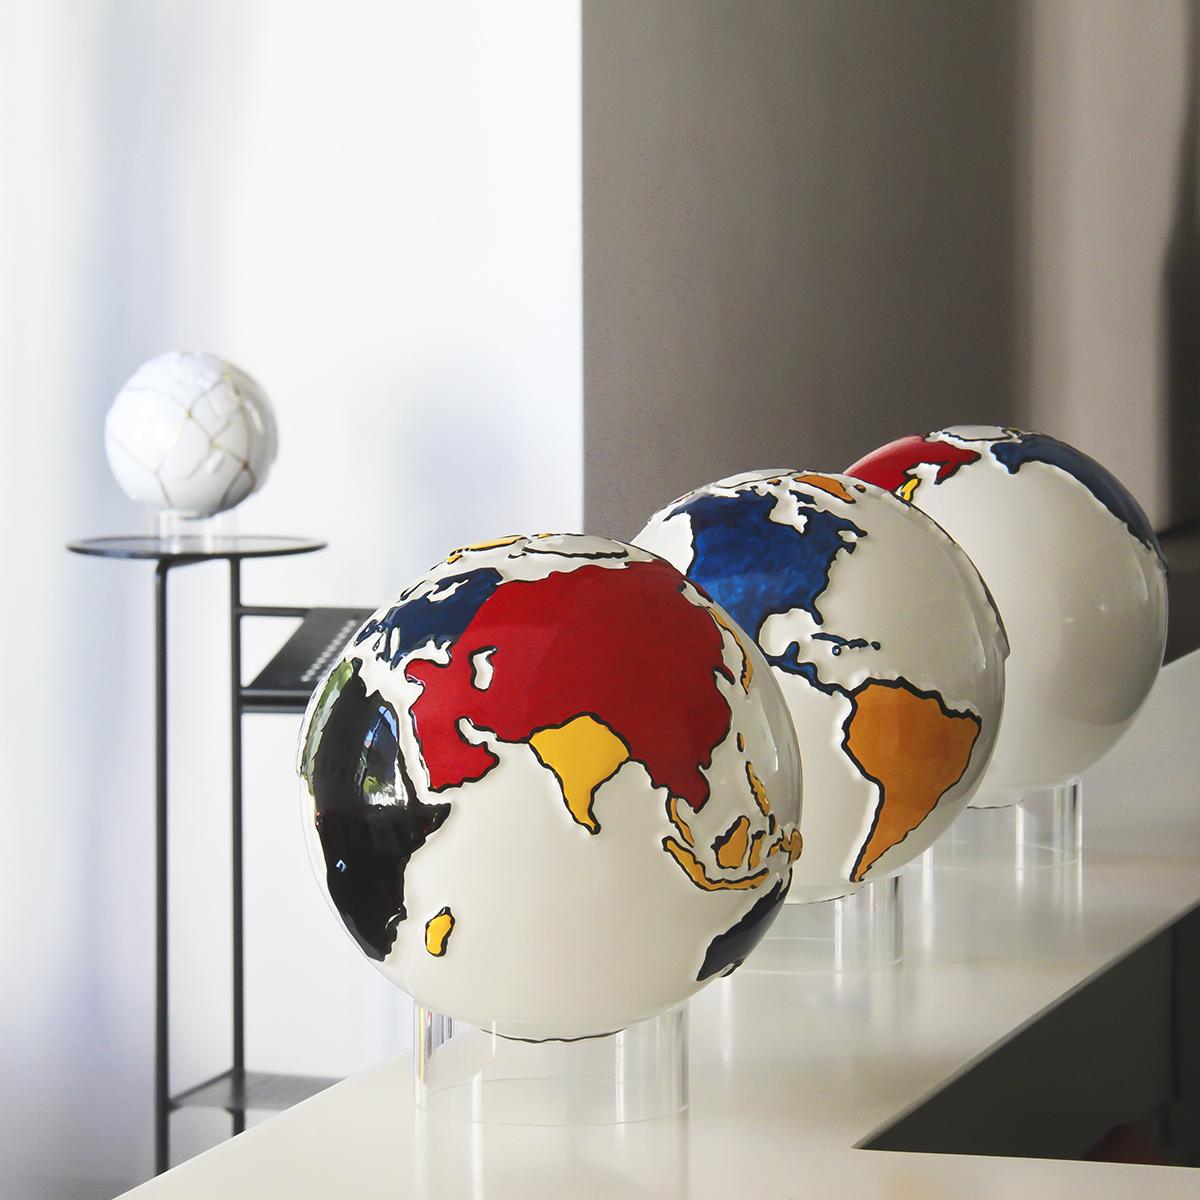 un globo in ceramica bianco rappresenta la terra e le terre emerse sono dipinte secondo lo stile Mondrian